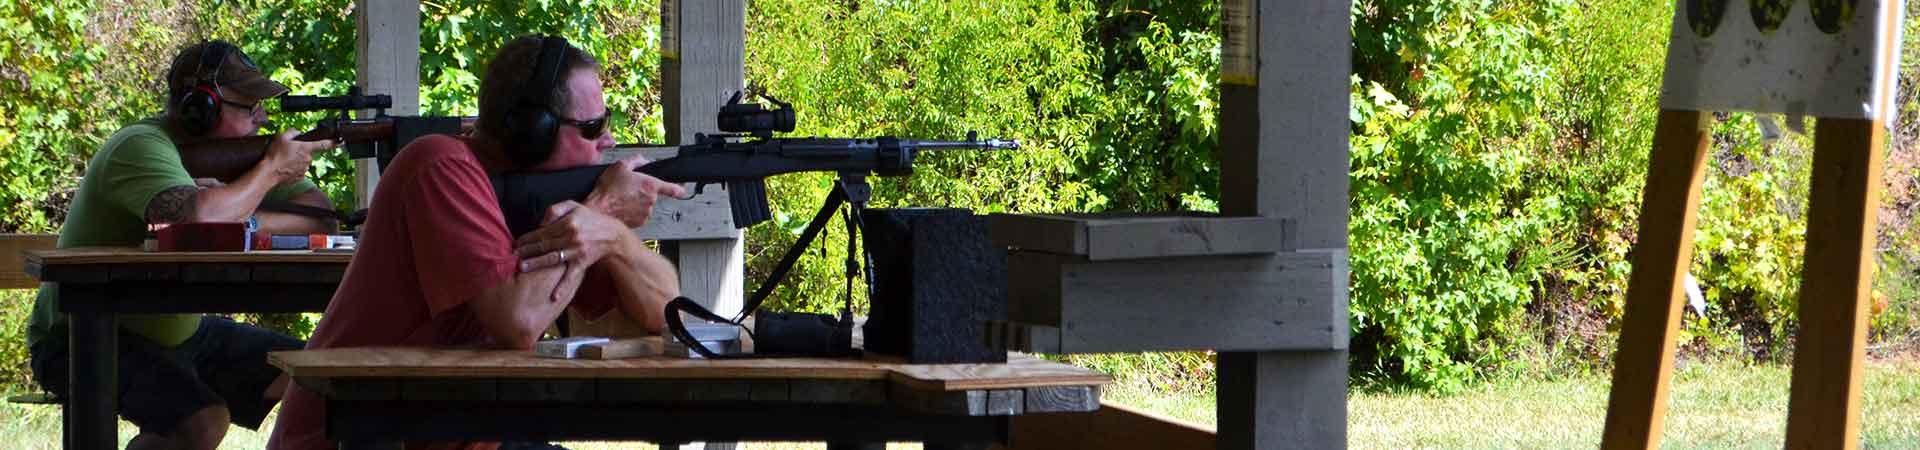 Shooting Range Bench